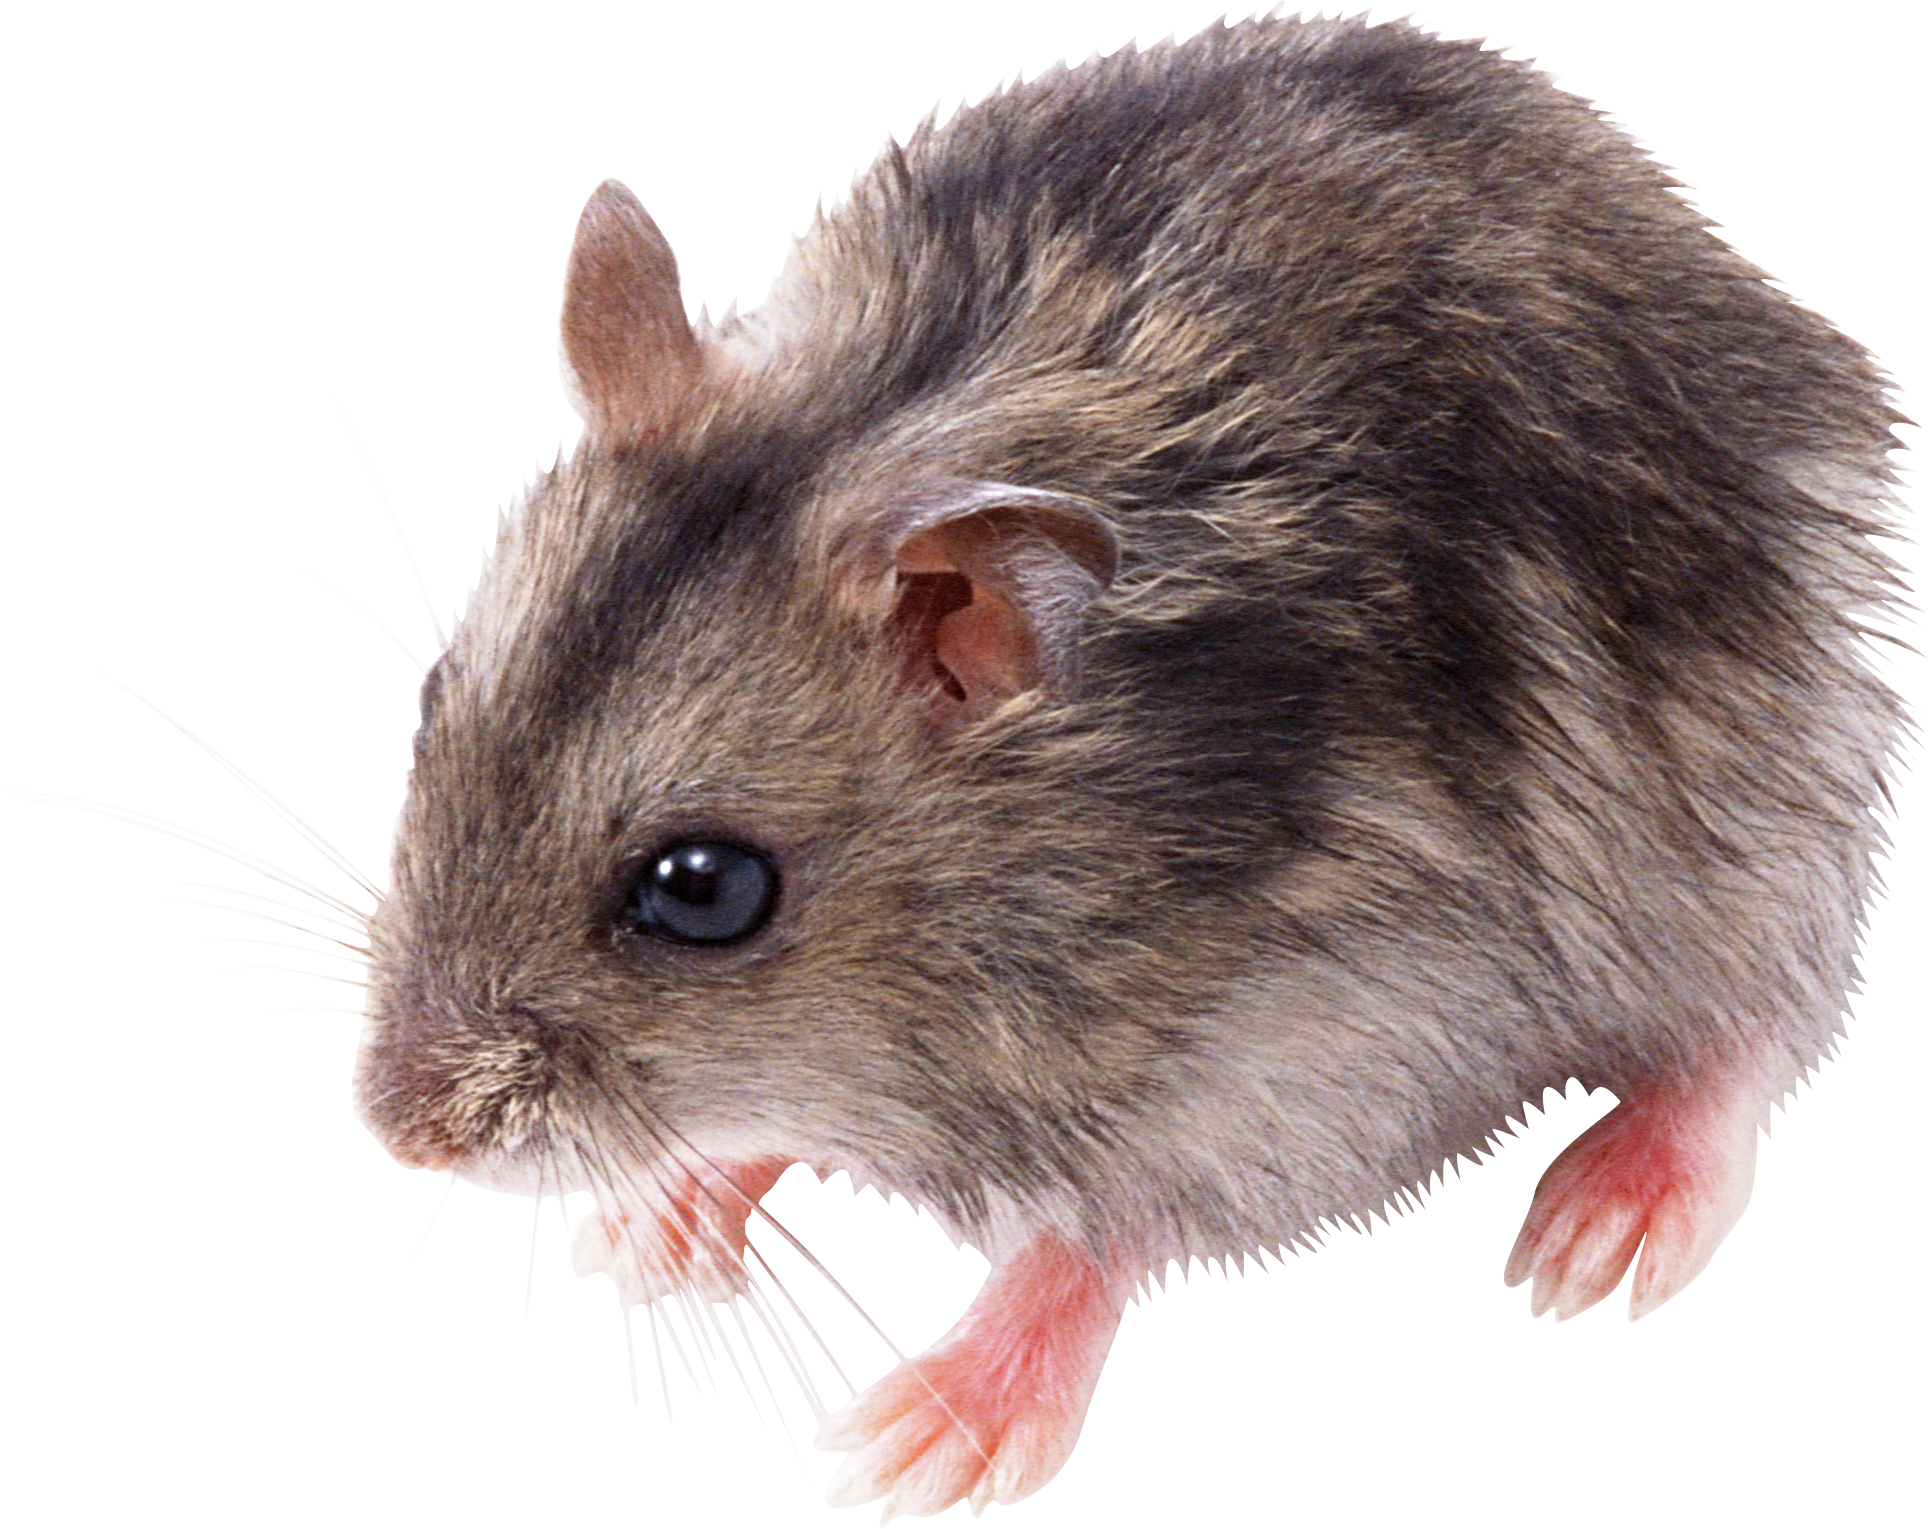 Little Mouse Rat Png - Rat, Transparent background PNG HD thumbnail